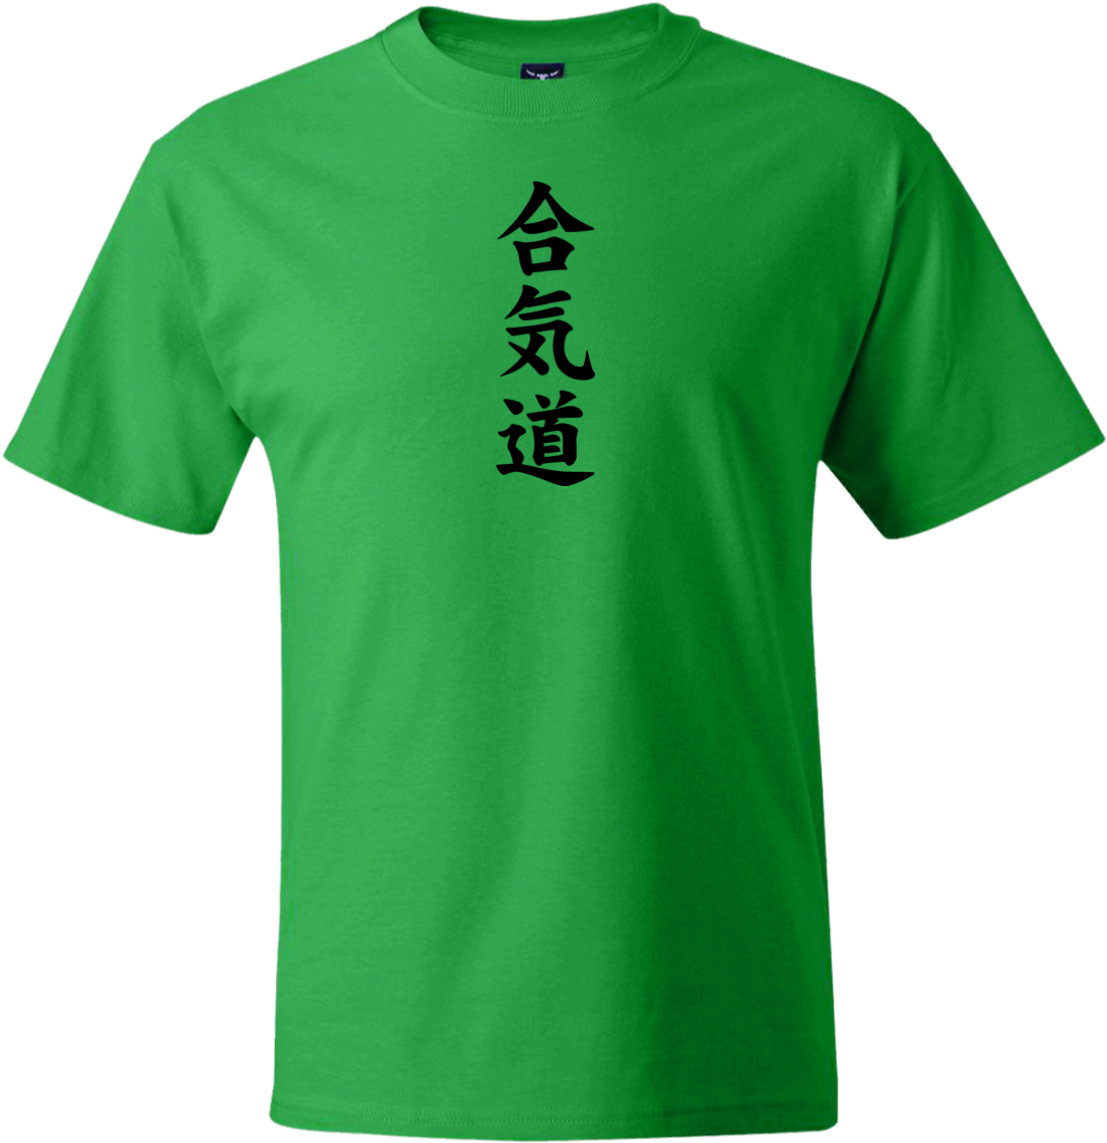 Aikido Kanji Green Tshirt PNG image